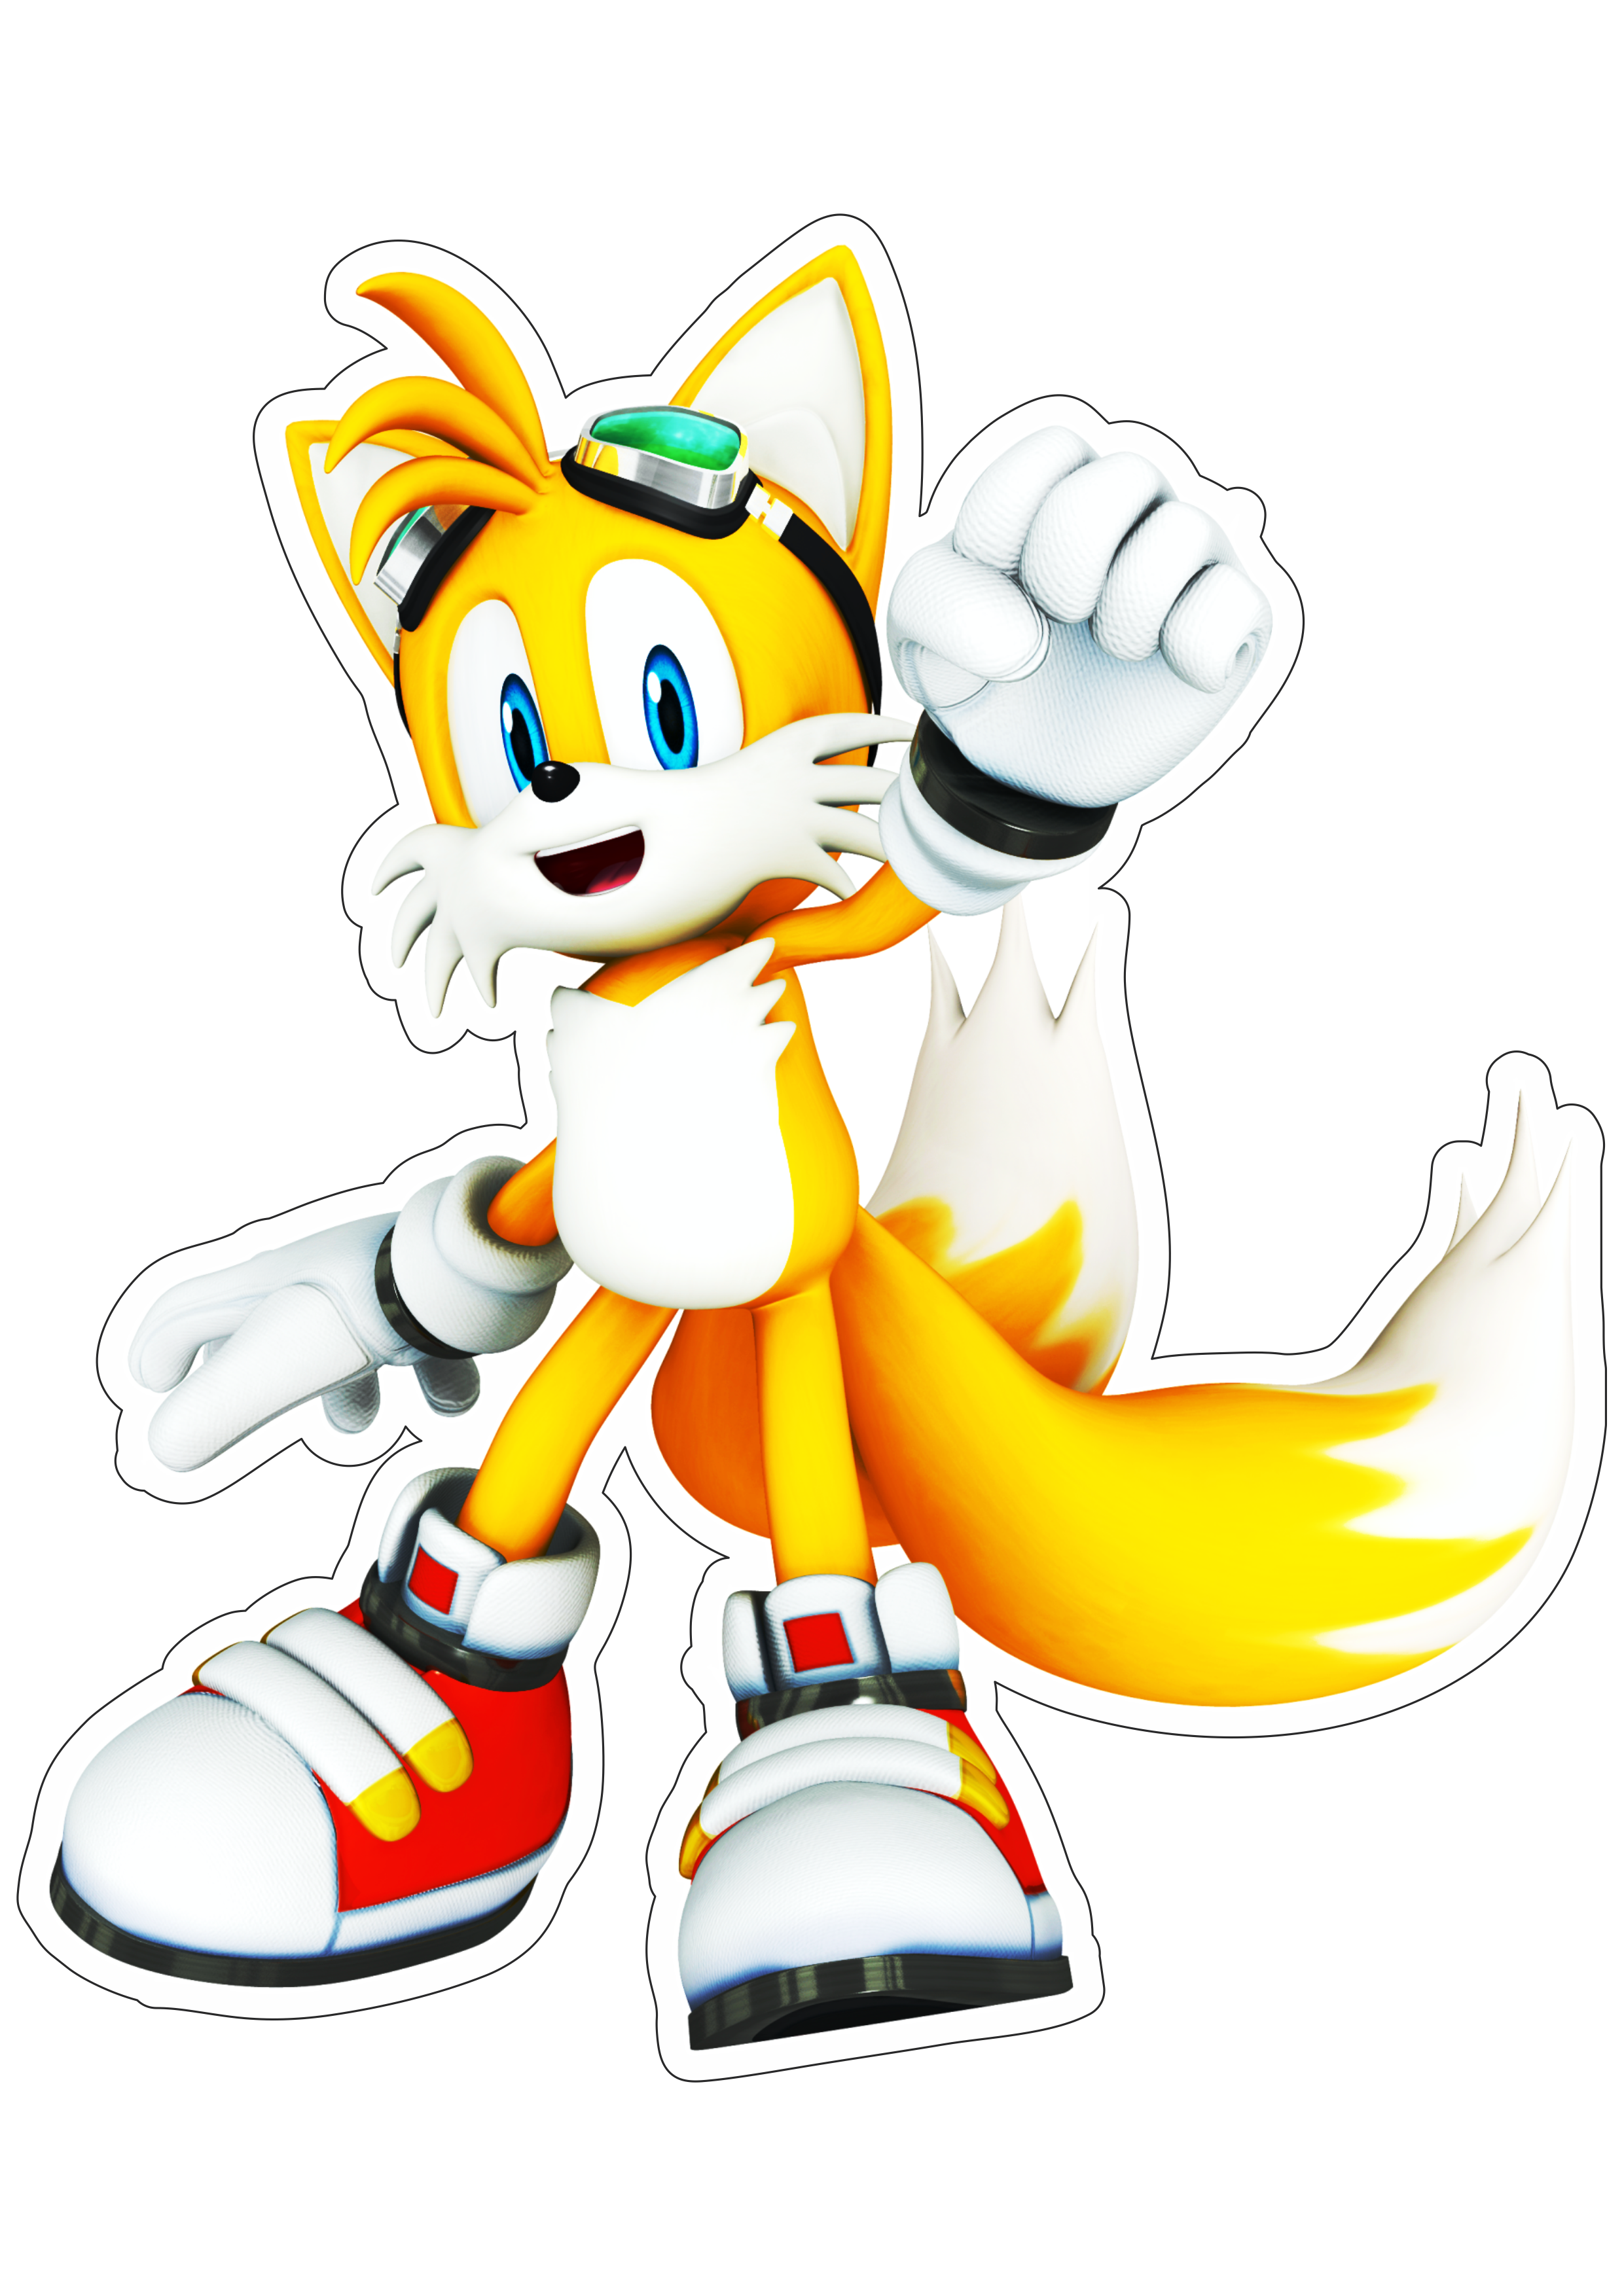 Tails Sonic the hedgehog personagem de game raposinha png